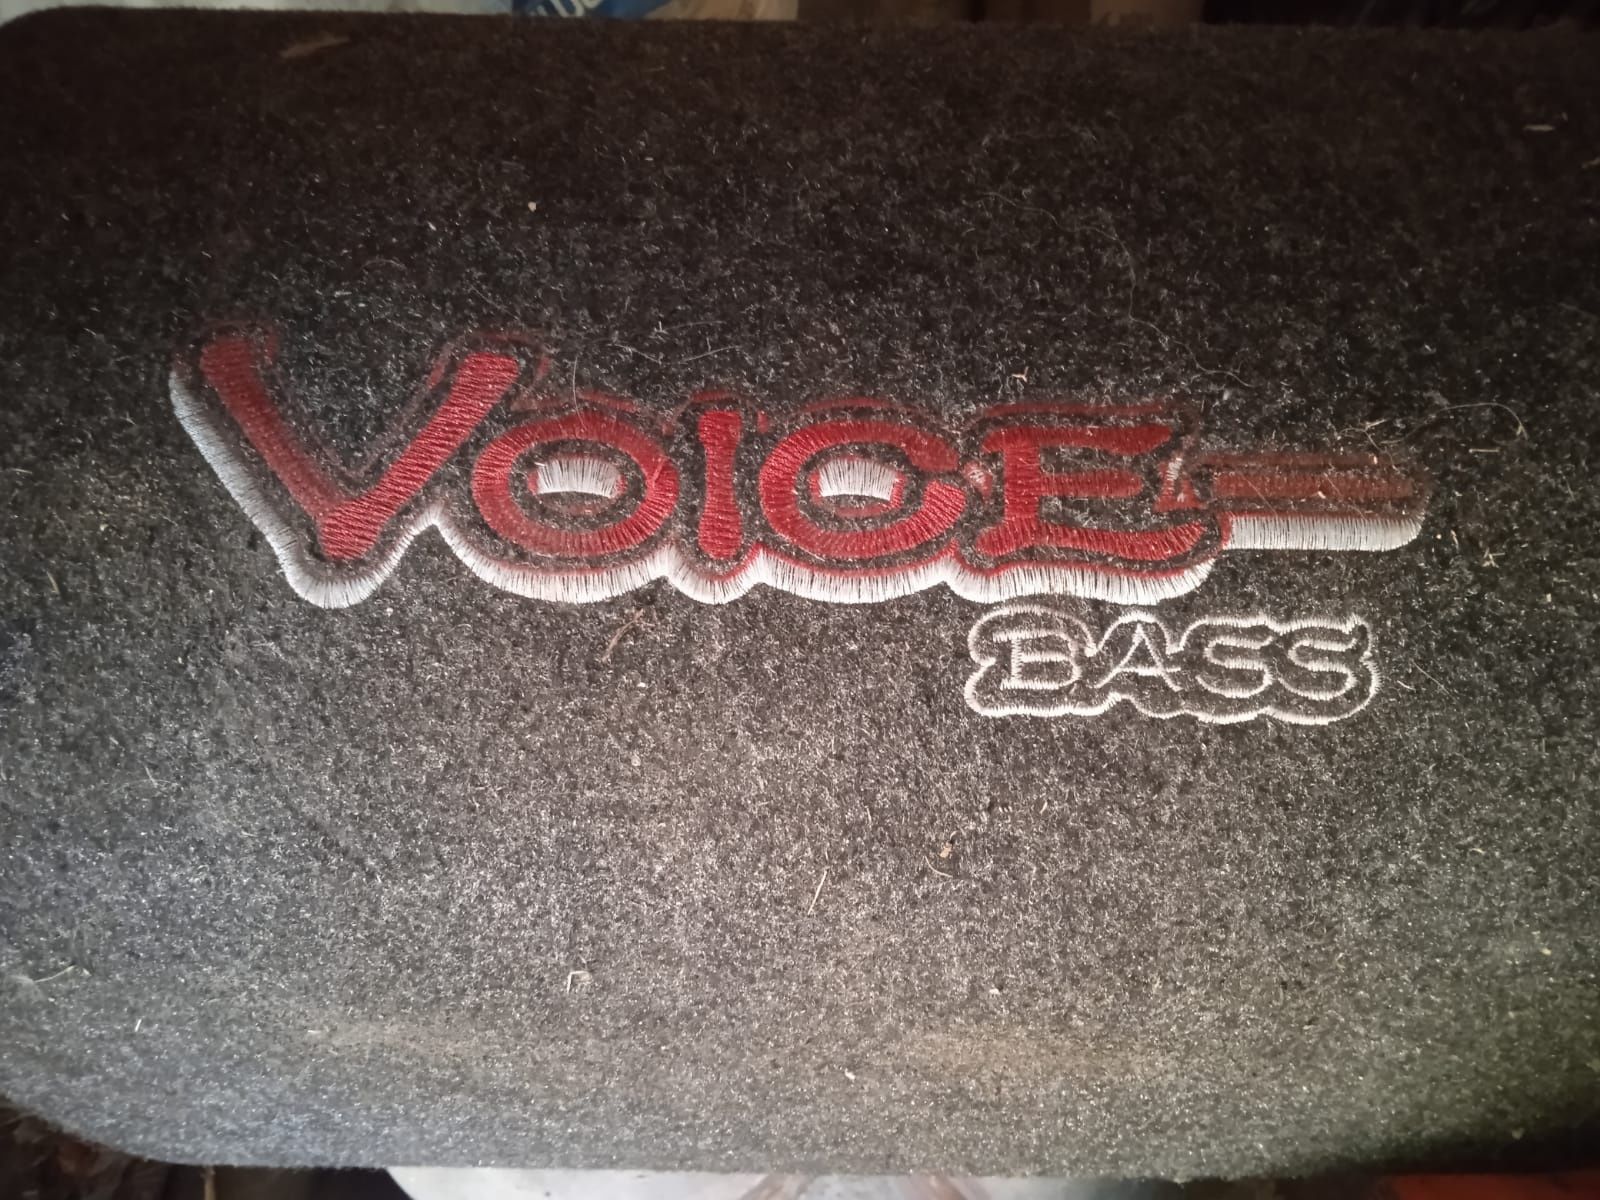 Сауббуфер Volce bass